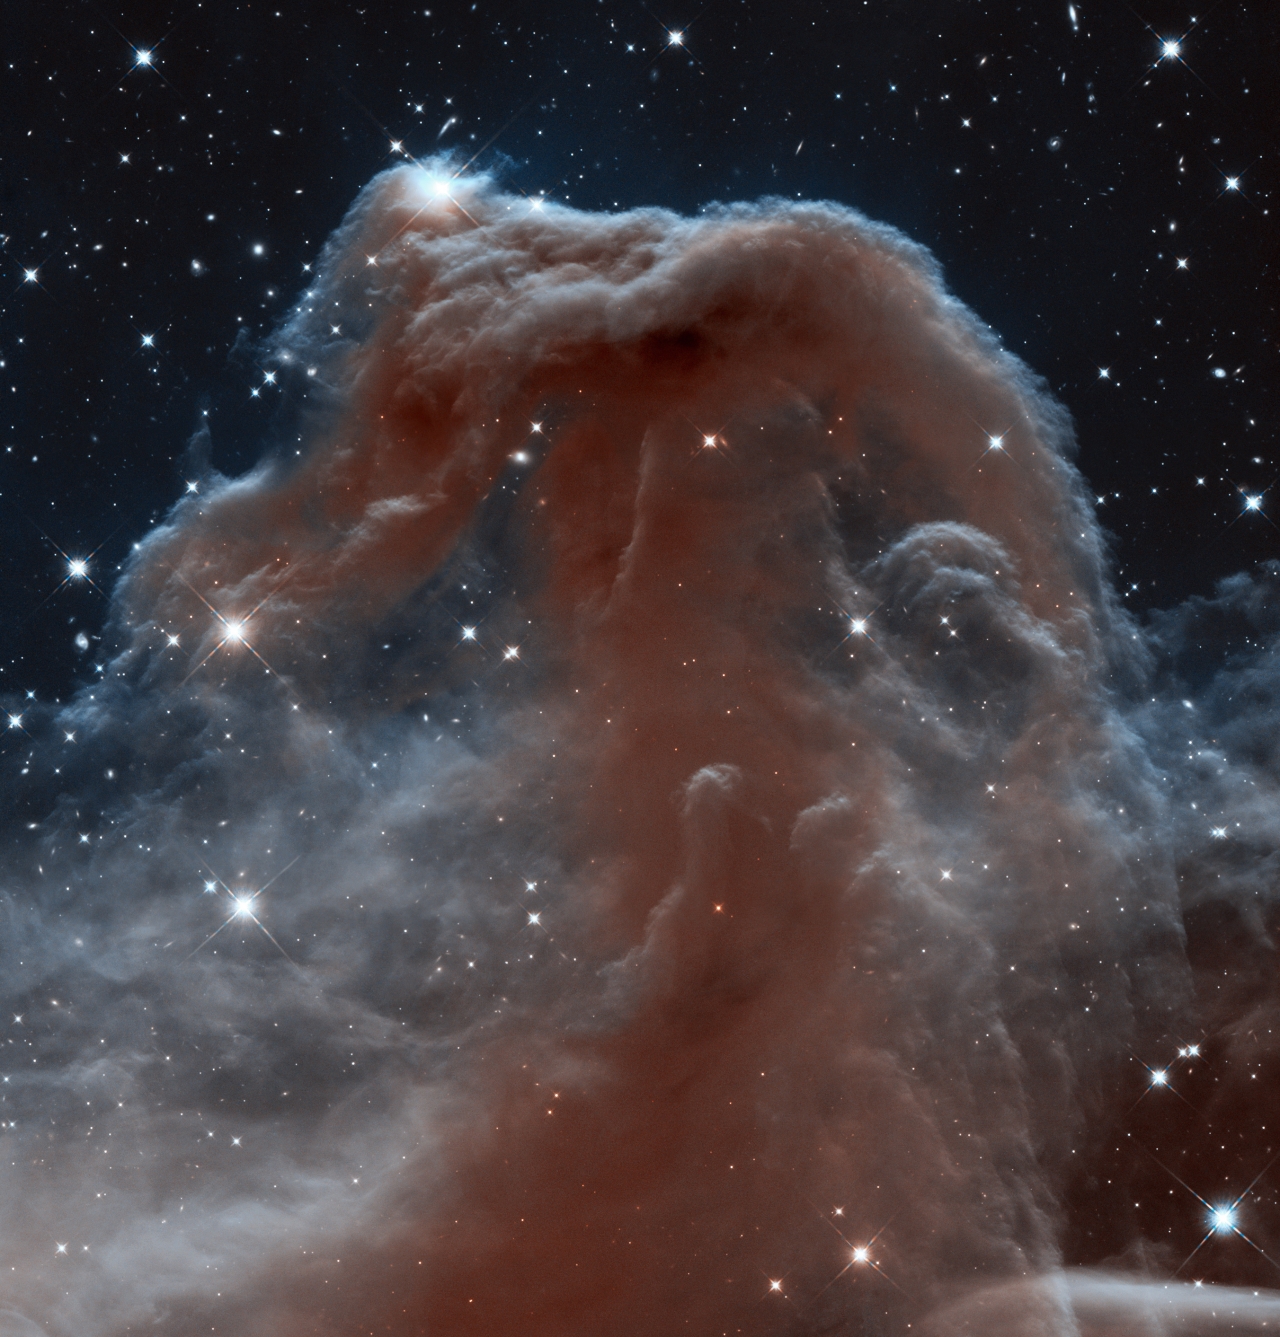 허블이 찍은 오리온자리 근처에 있는 말머리 성운. 출처: NASA, ESA, and the Hubble Heritage Team (AURA/STScI)